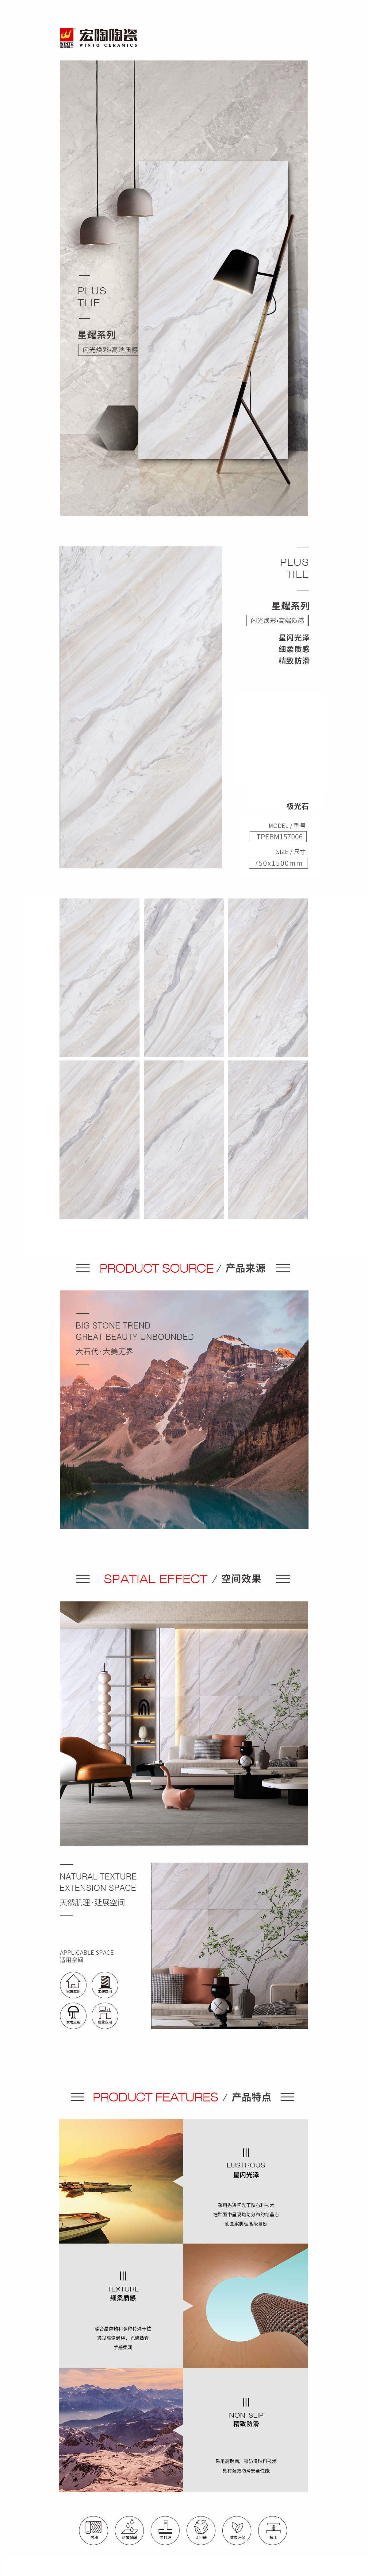 TPEBM157006极光石陶瓷大板详细介绍了陶瓷大板的图片、规格、特点等，是东莞瓷砖，是拉菲9陶瓷品牌-中国陶瓷一线品牌。